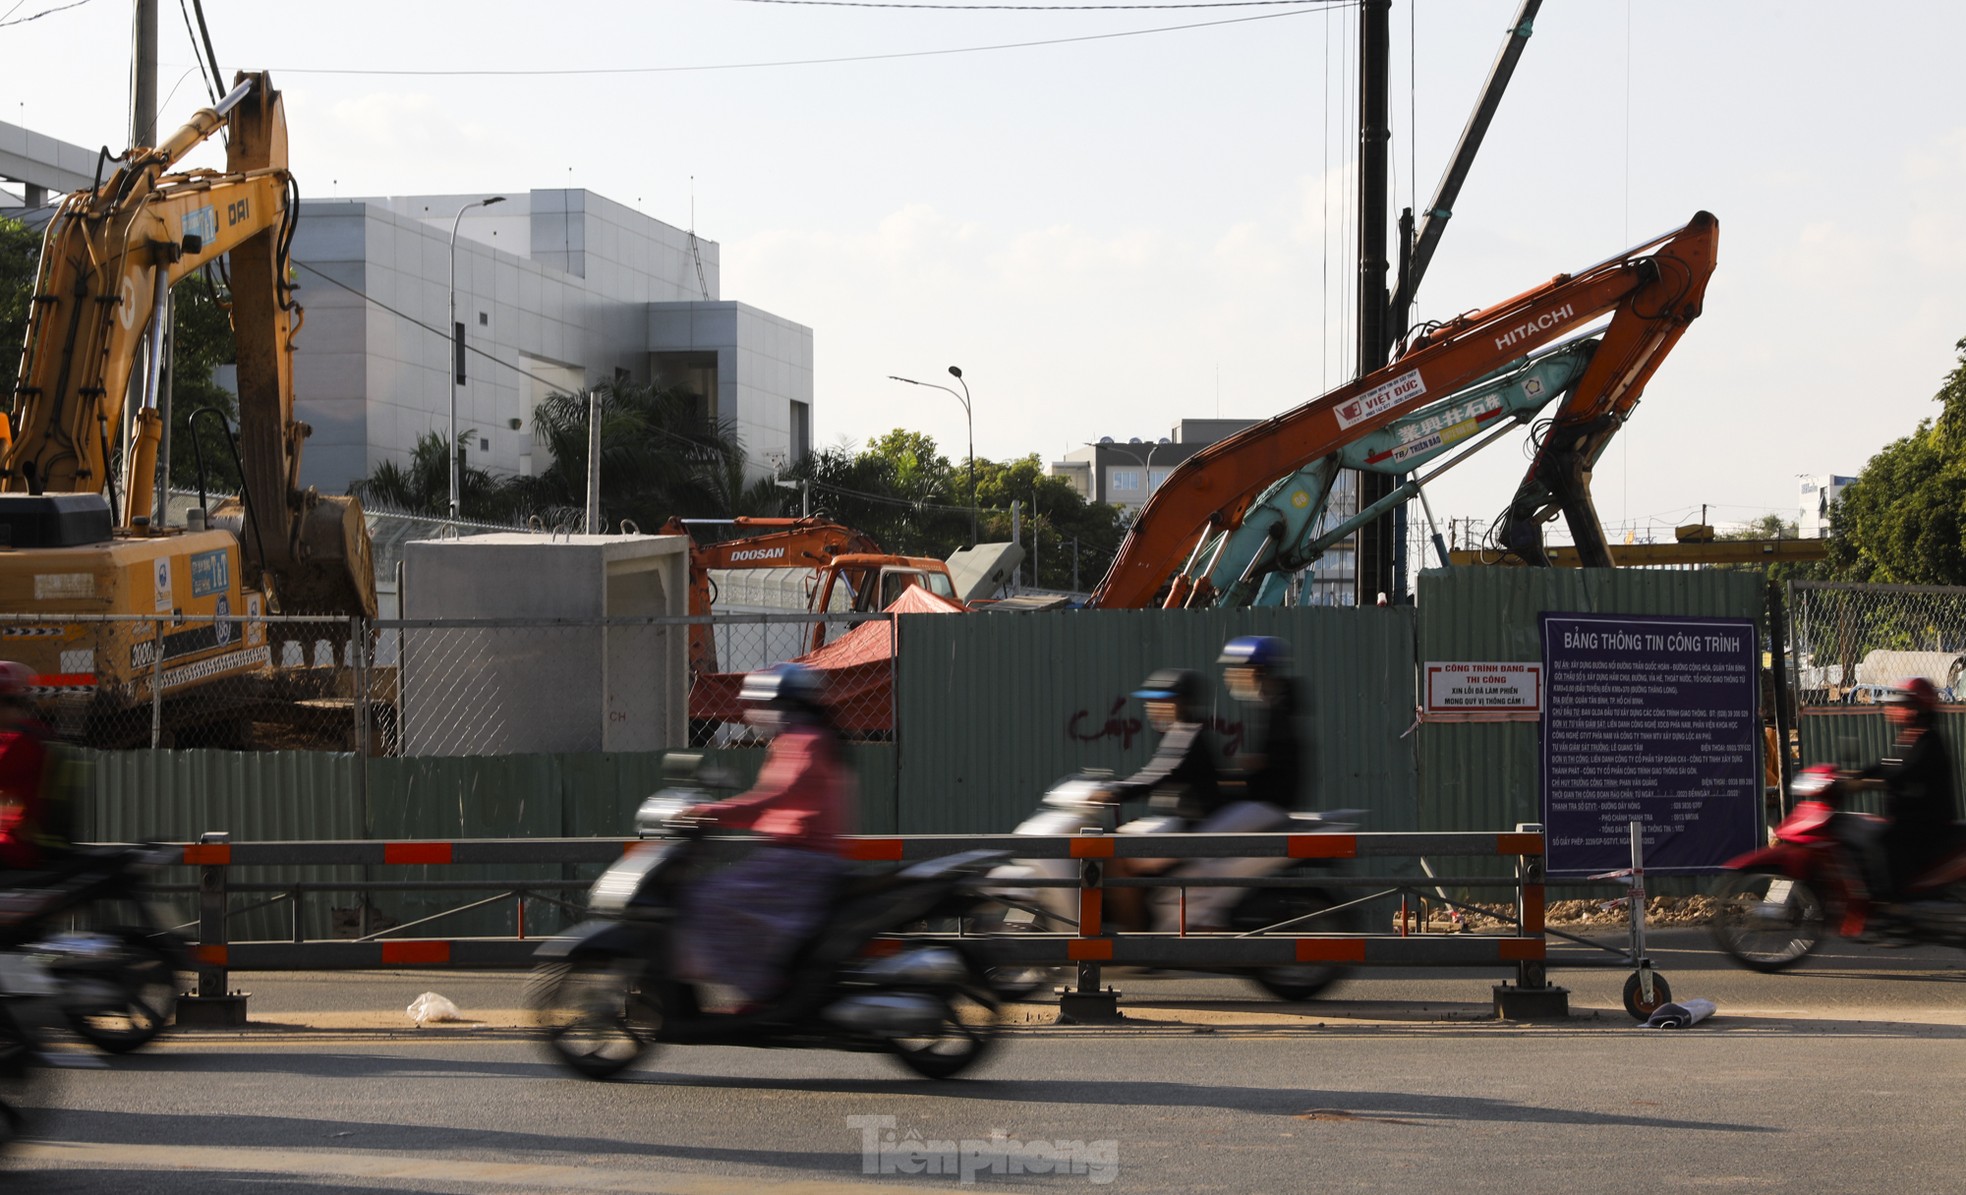 Hầm chui nghìn tỷ 'giải cứu' kẹt xe cửa ngõ sân bay Tân Sơn Nhất dần lộ diện - Ảnh 16.